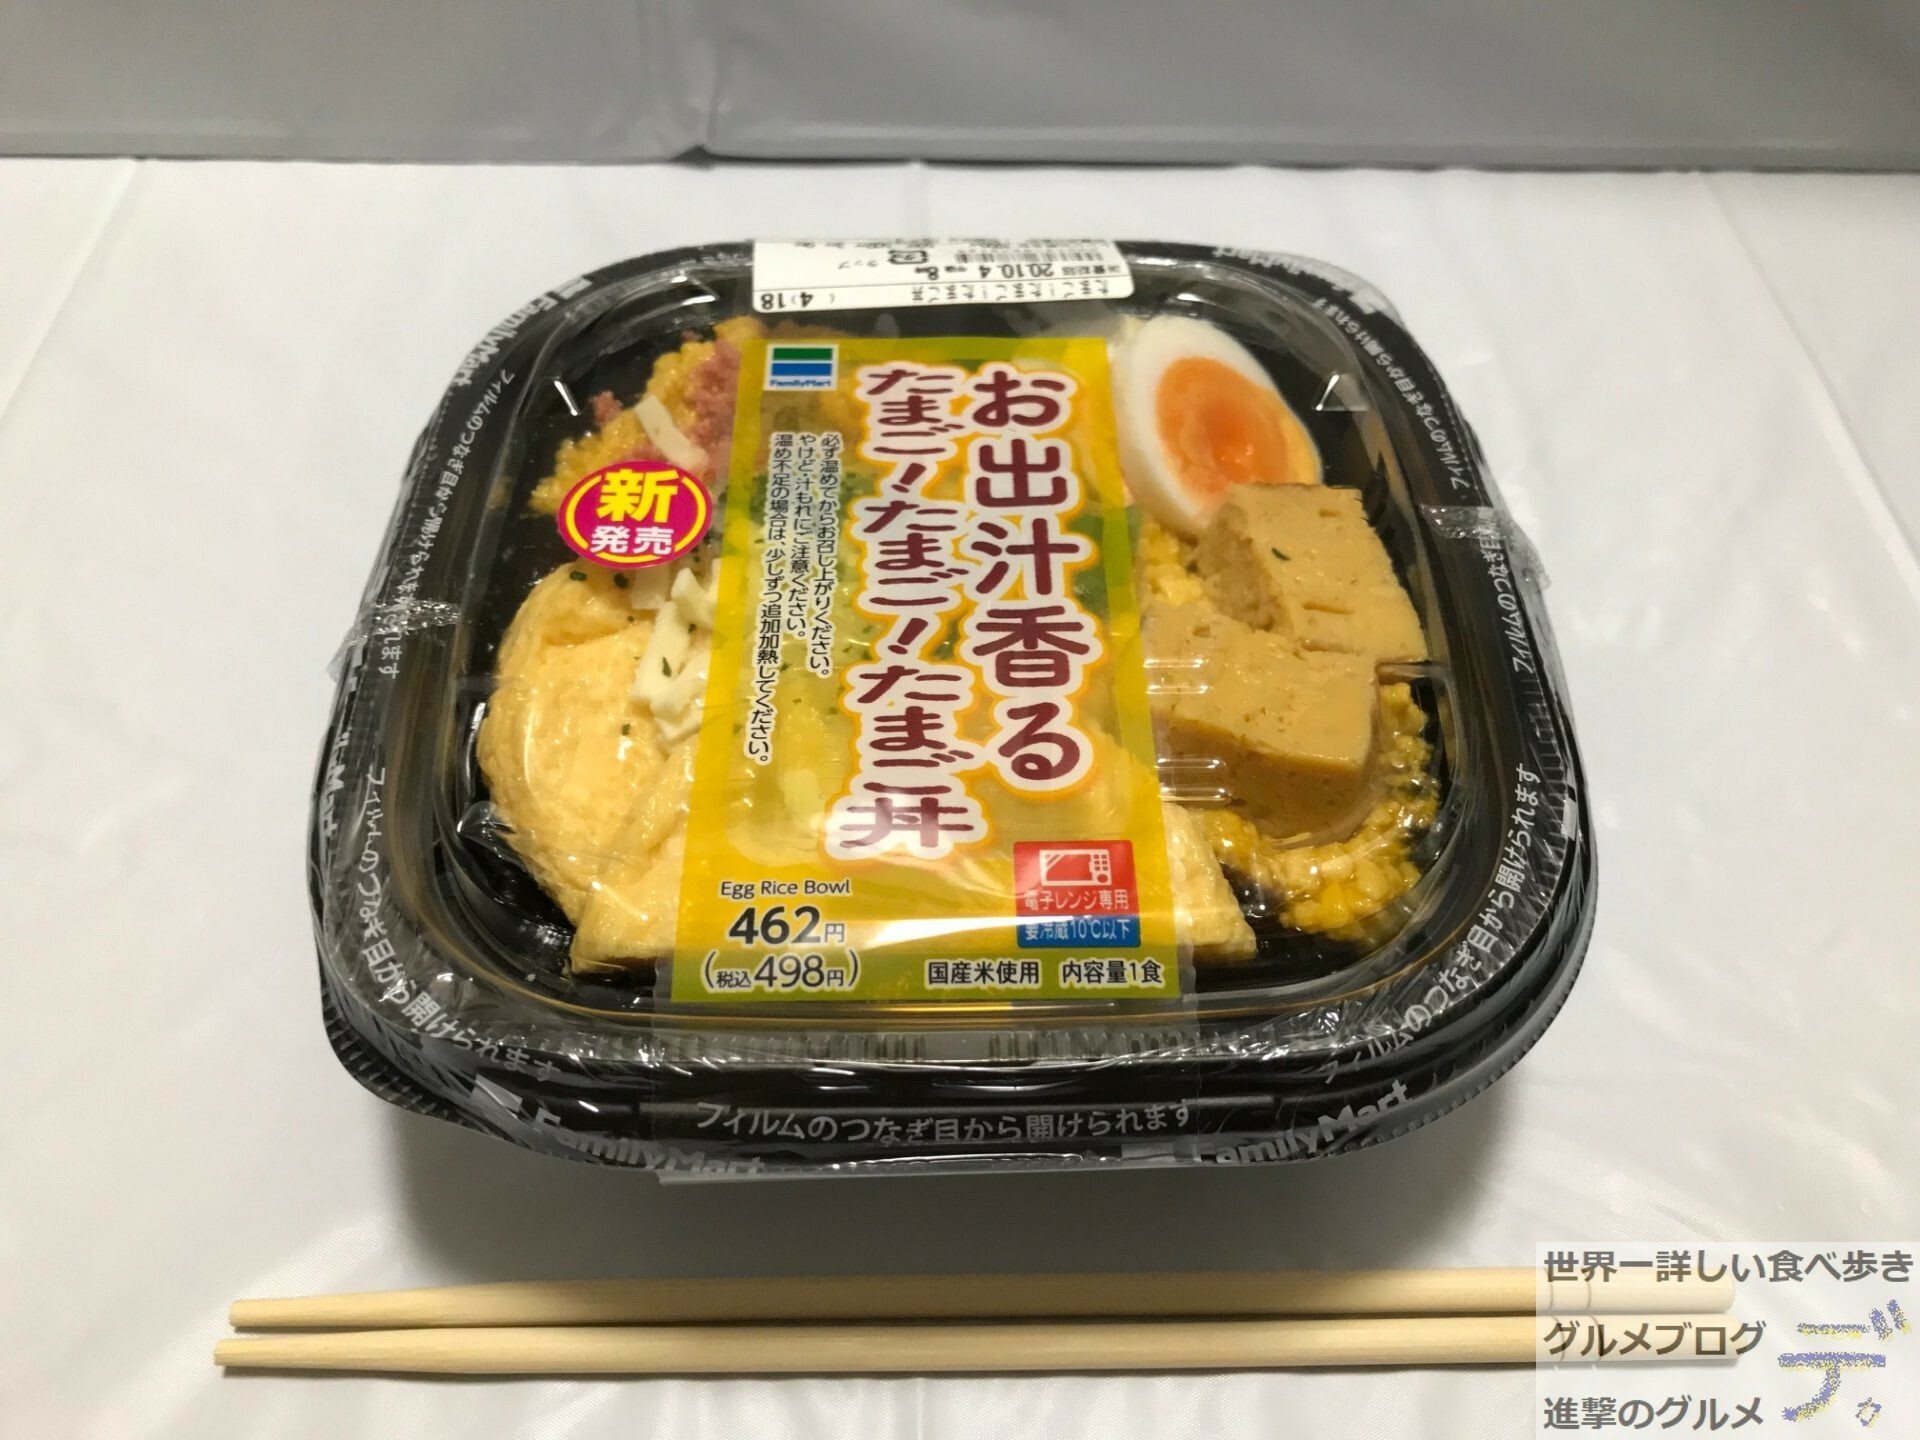 ファミマの奇抜な弁当「お出汁香るたまご！たまご！たまご丼（498円）」